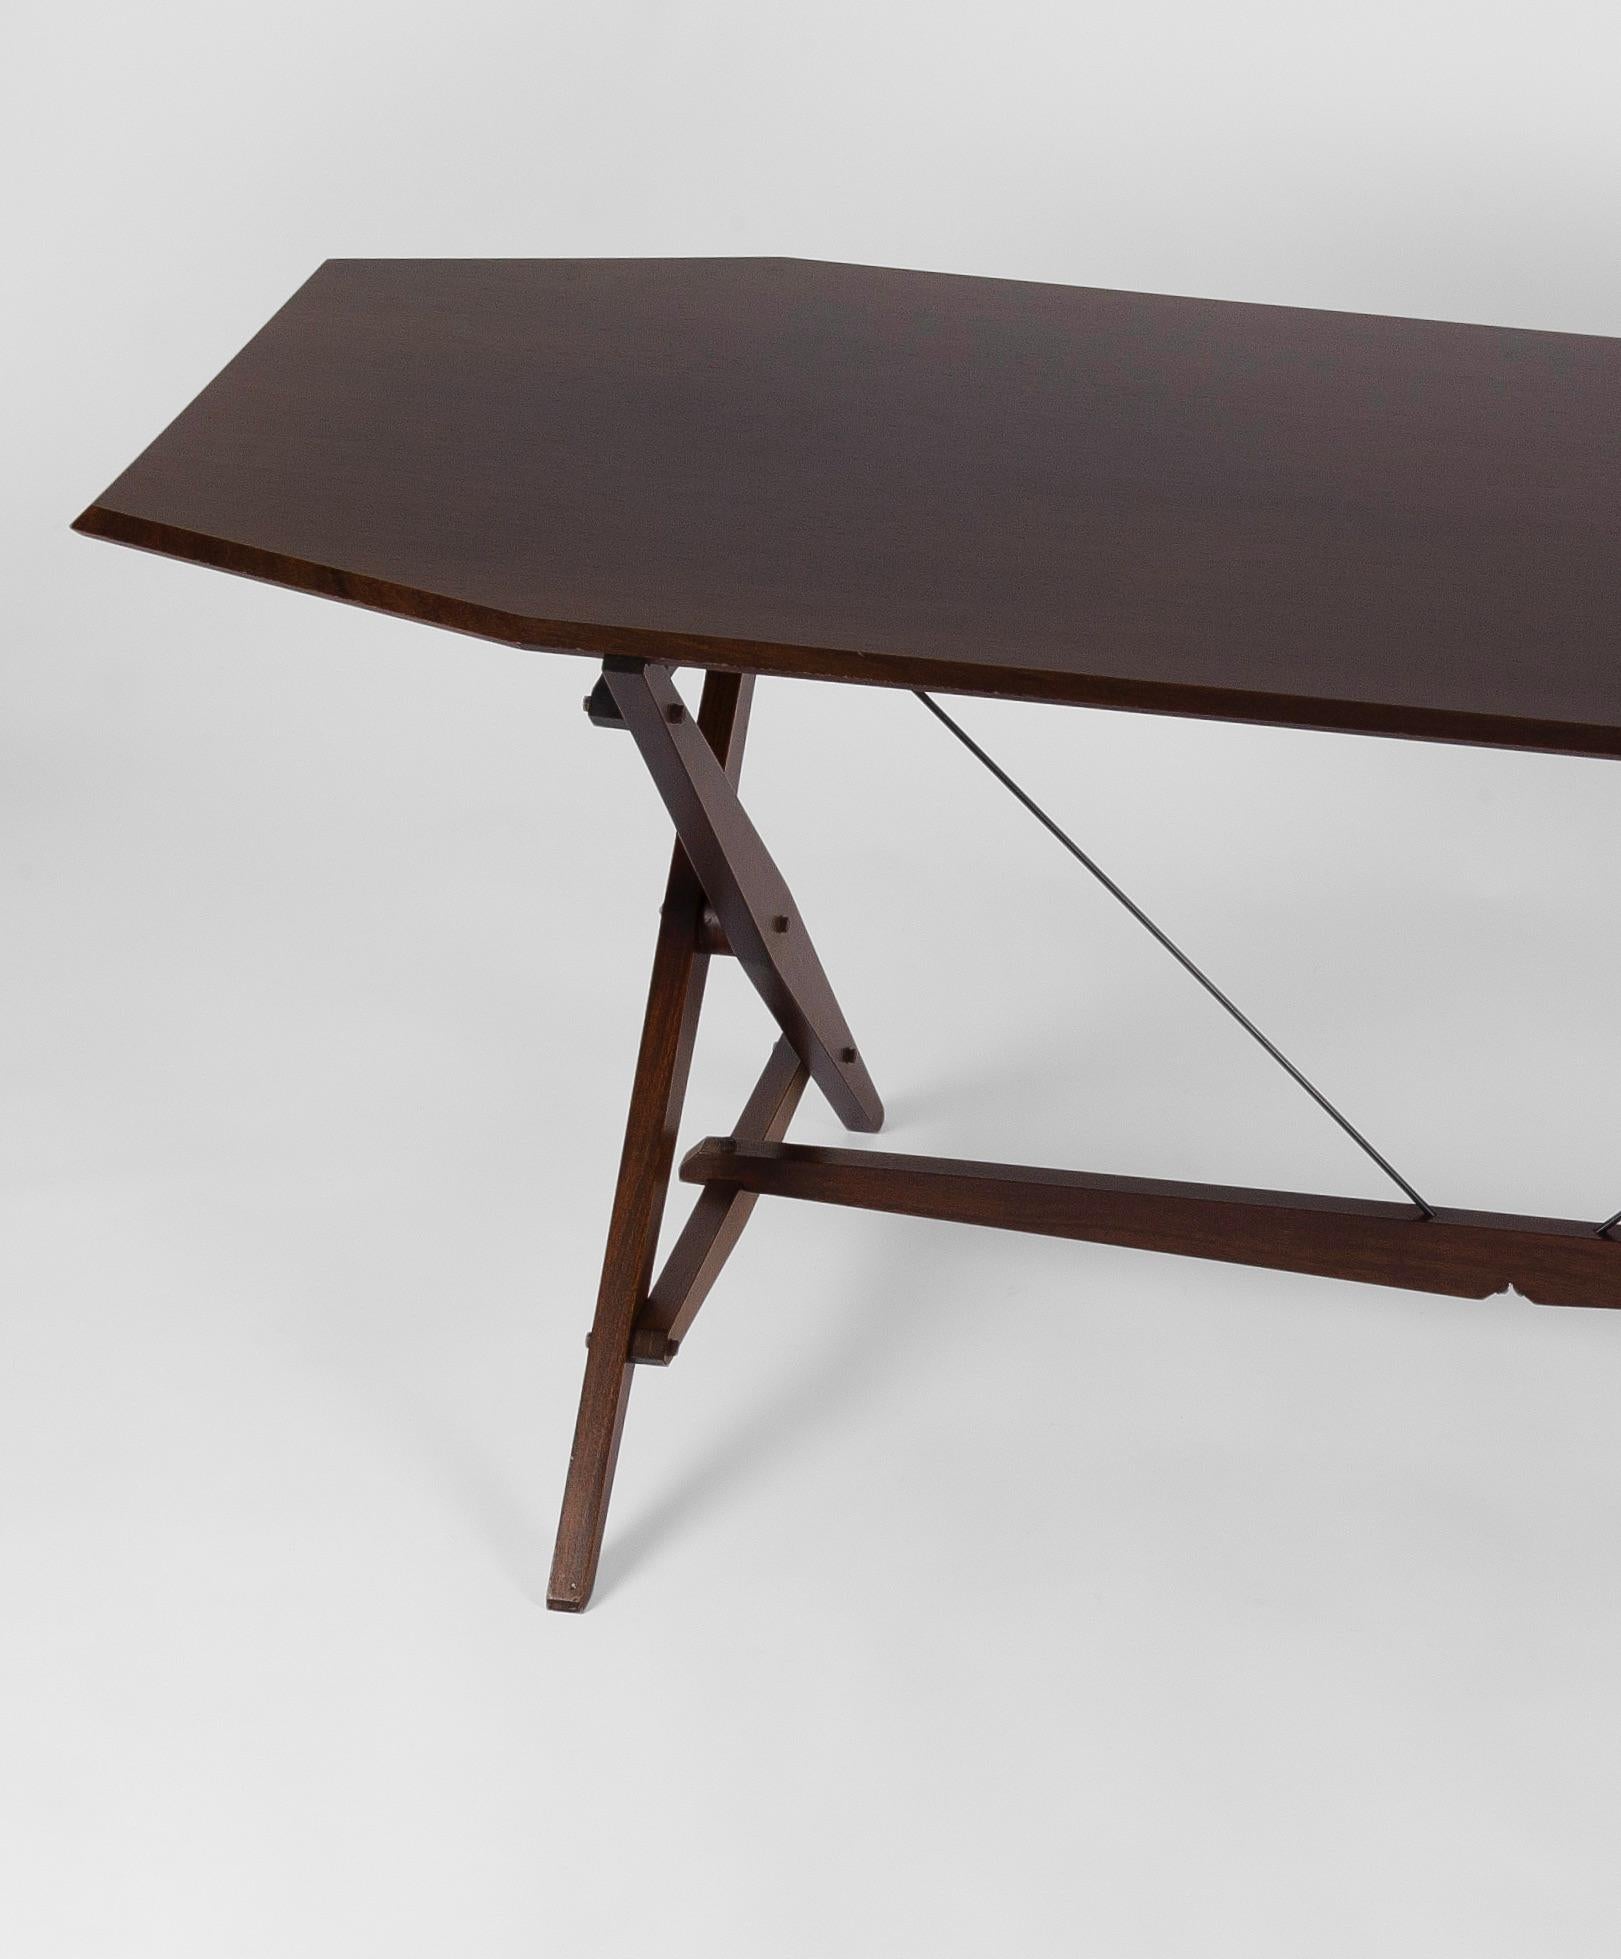 Eine seltene Mahagoniversion des Tisches Cavaletto oder TL2, entworfen von dem großen neorationalistischen Designer Franco Albini. Der 1950 für den Hersteller Poggi entworfene Cavaletto (Bock) ist sowohl Tisch als auch Schreibtisch, mit seinen